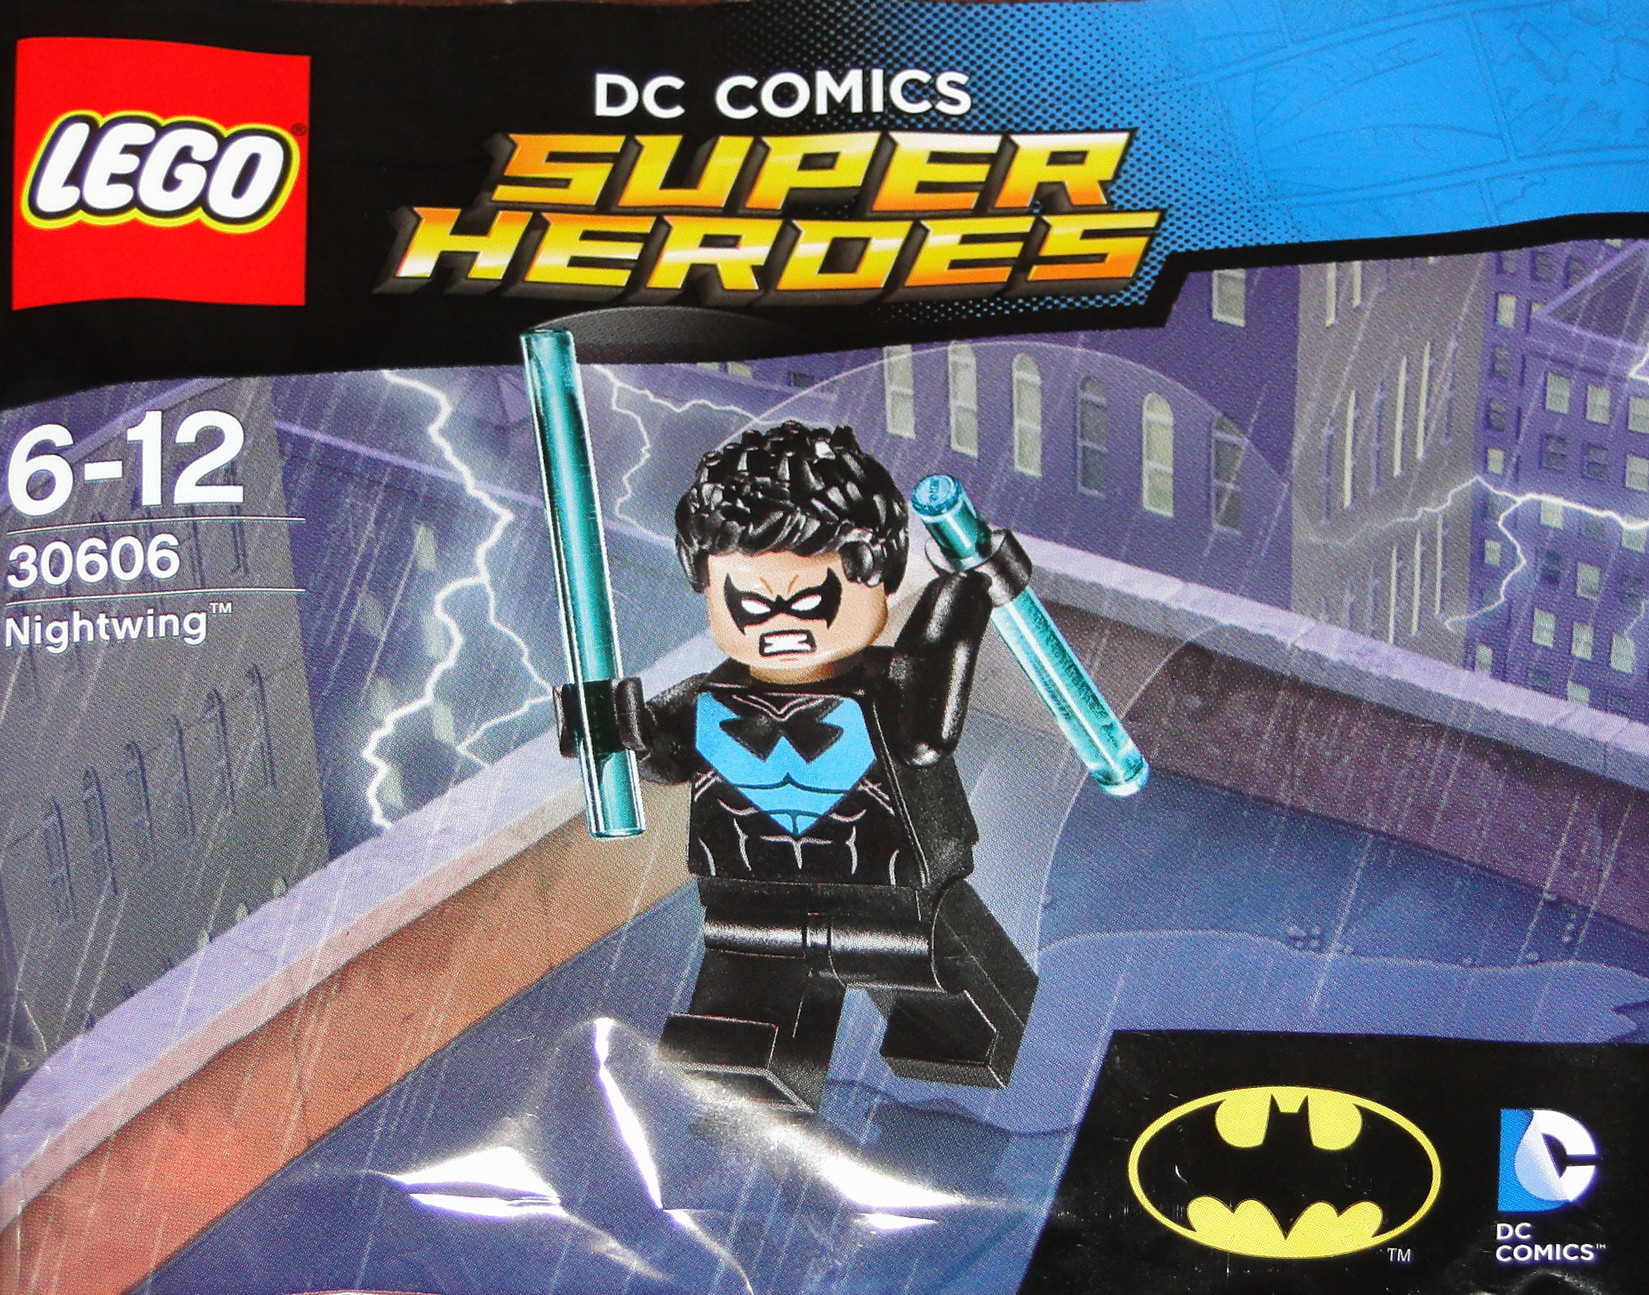 lego dc comics super heroes sets